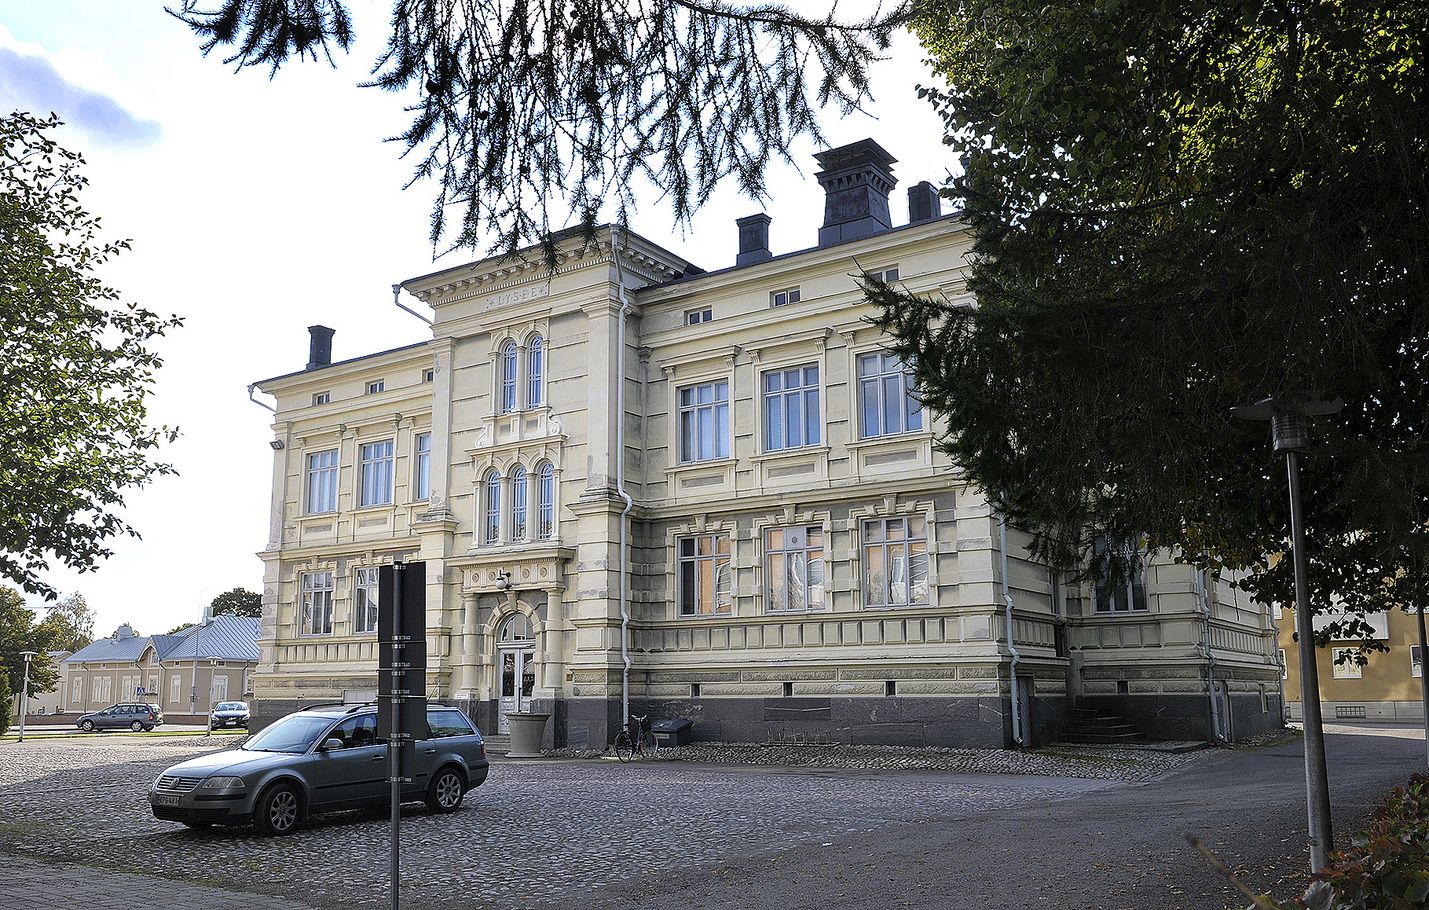 Vuonna 1987 valmistunut Tarvonsaaren koulu sijaitsee kaupunkikuvallisesti merkittävällä paikalla Rauman kaupungintalokorttelissa. Rakennus on erittäin hyvin säilynyt.